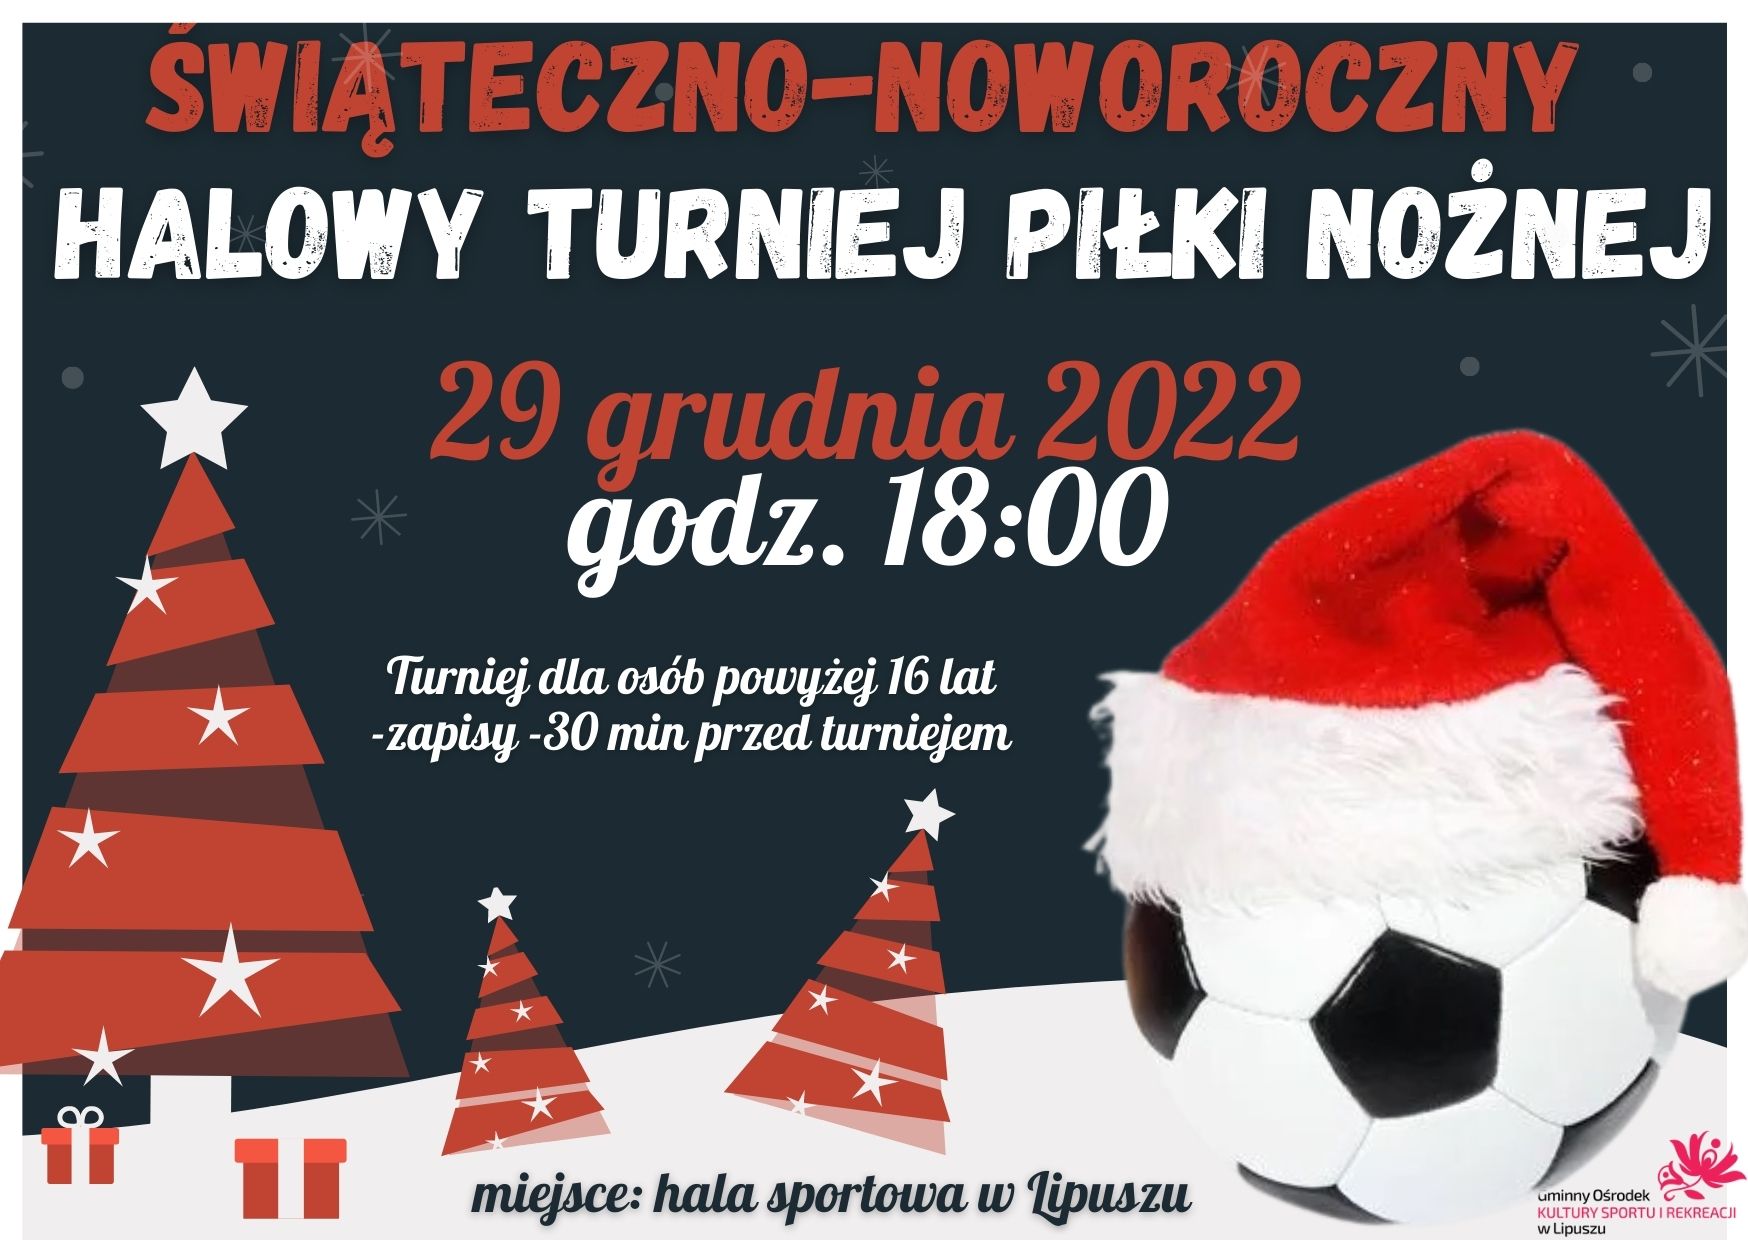 plakat z informacją o świąteczno-noworocznym halowym turnieju piłki nożnej na hali sportowej w Lipuszu